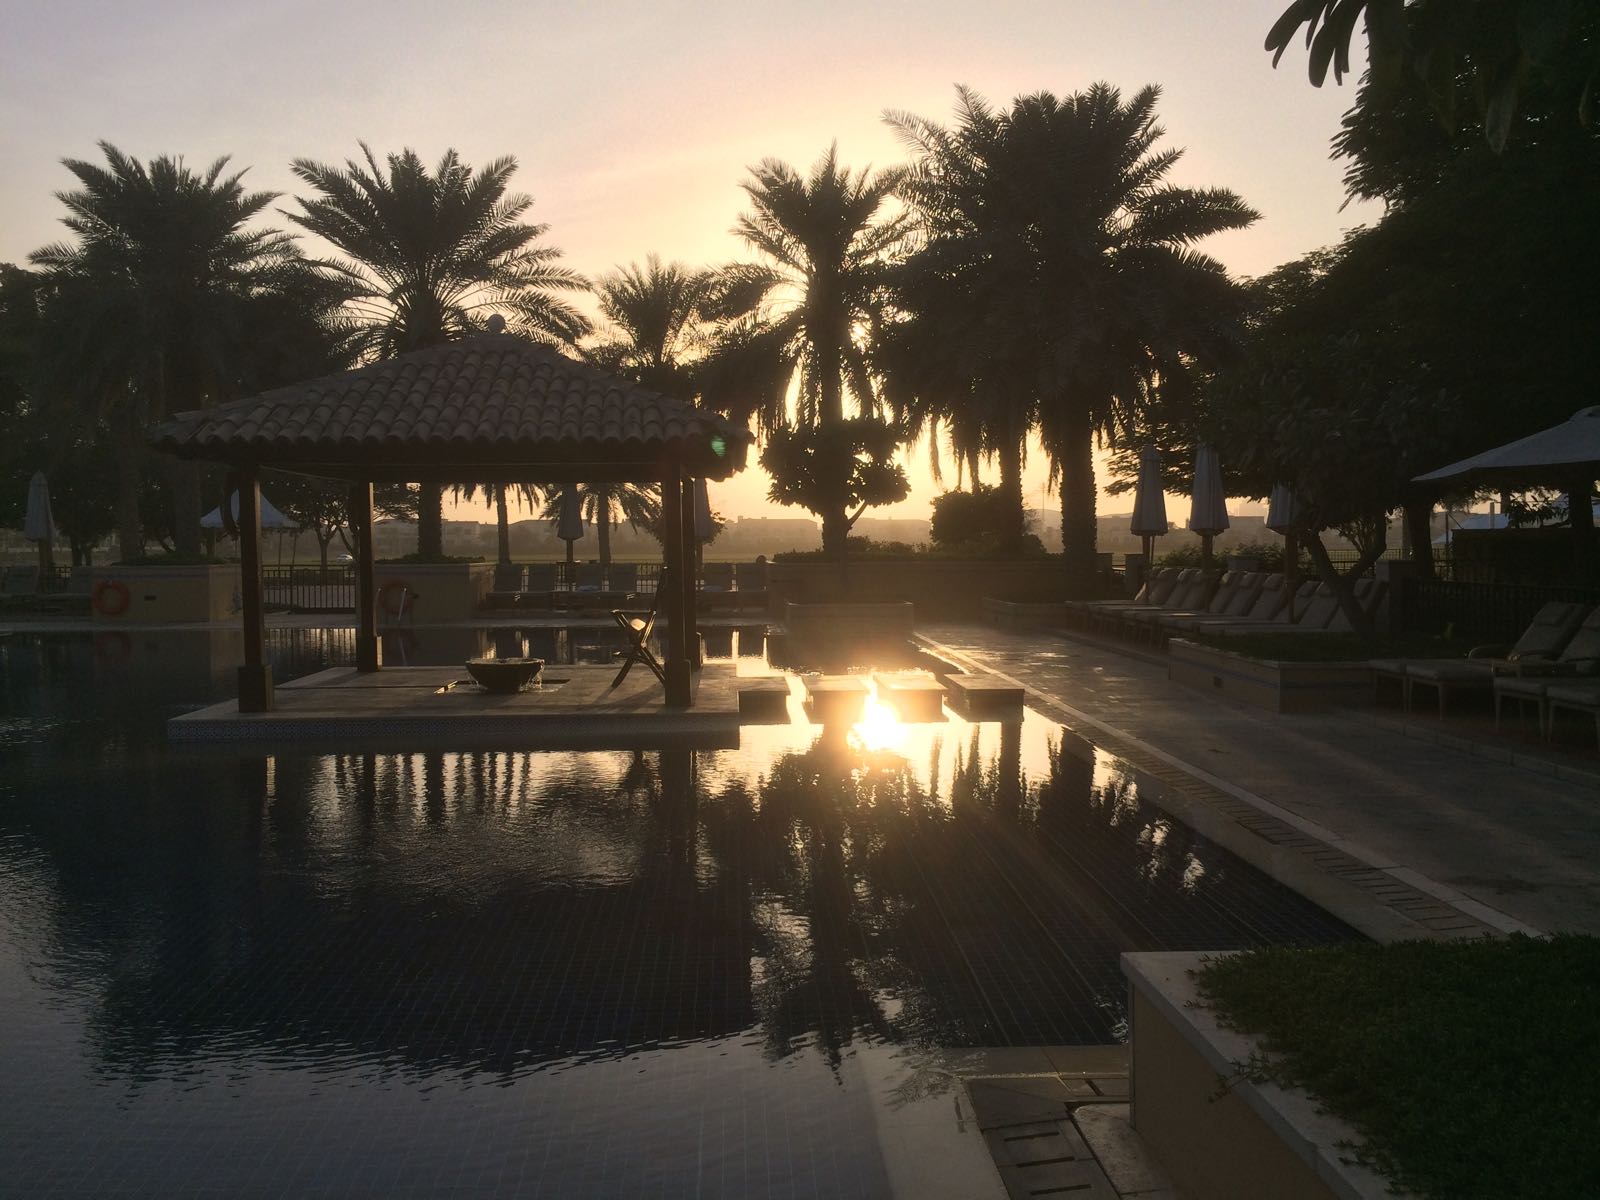 A swimming pool in Dubai